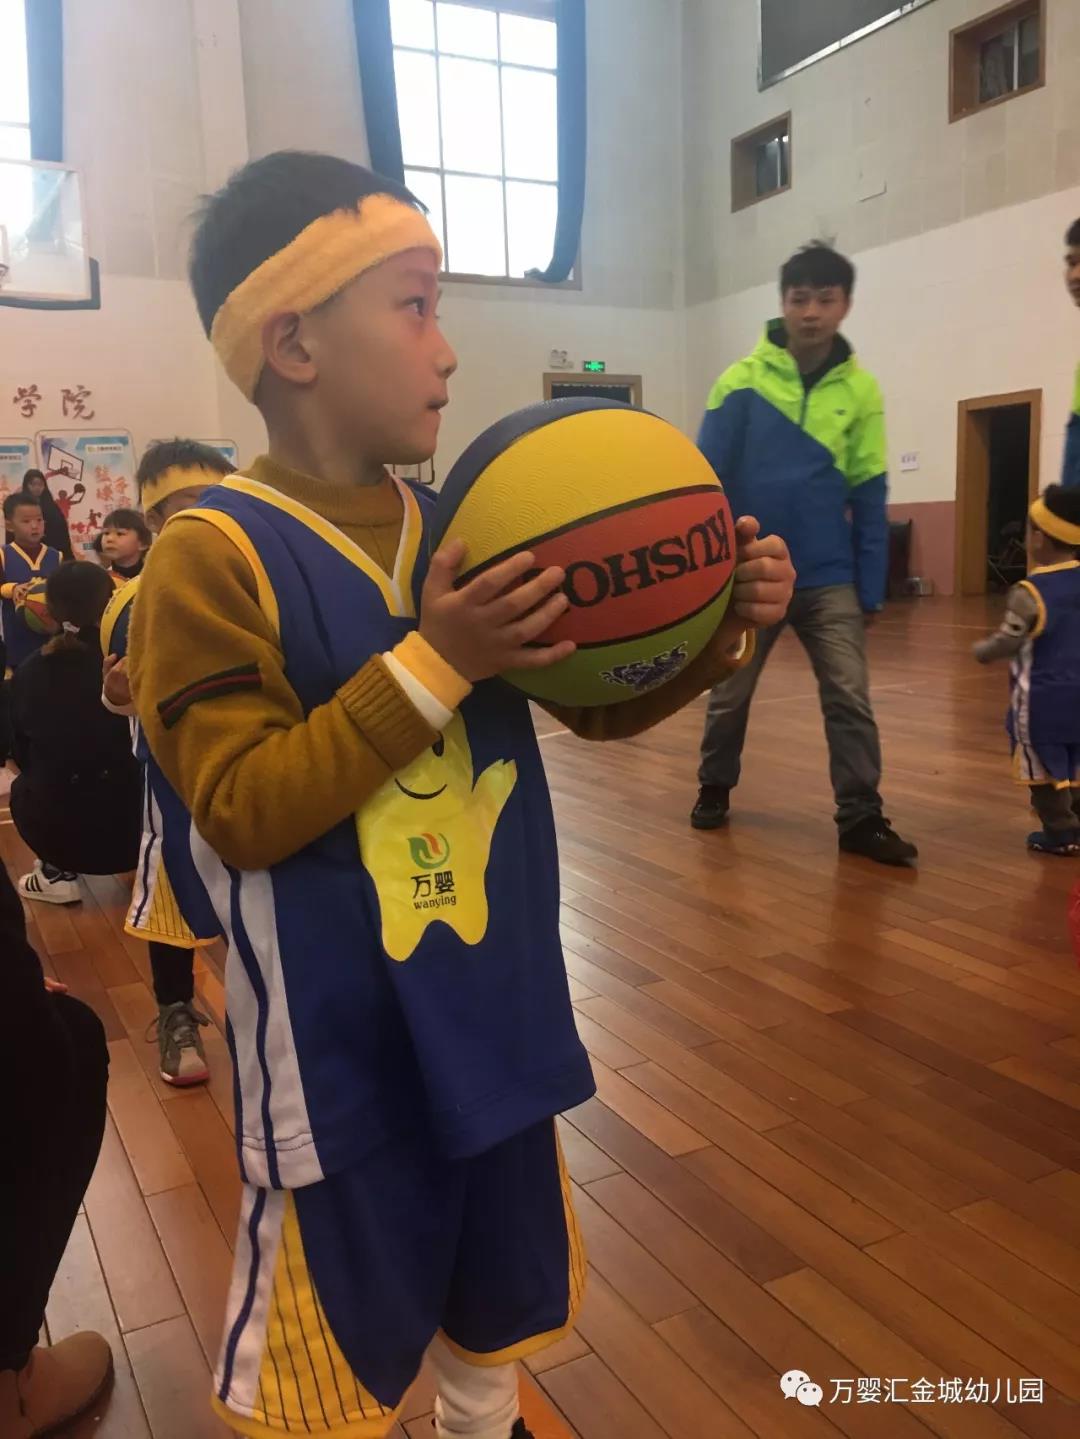 幼儿园篮球摆拍的照片-图库-五毛网